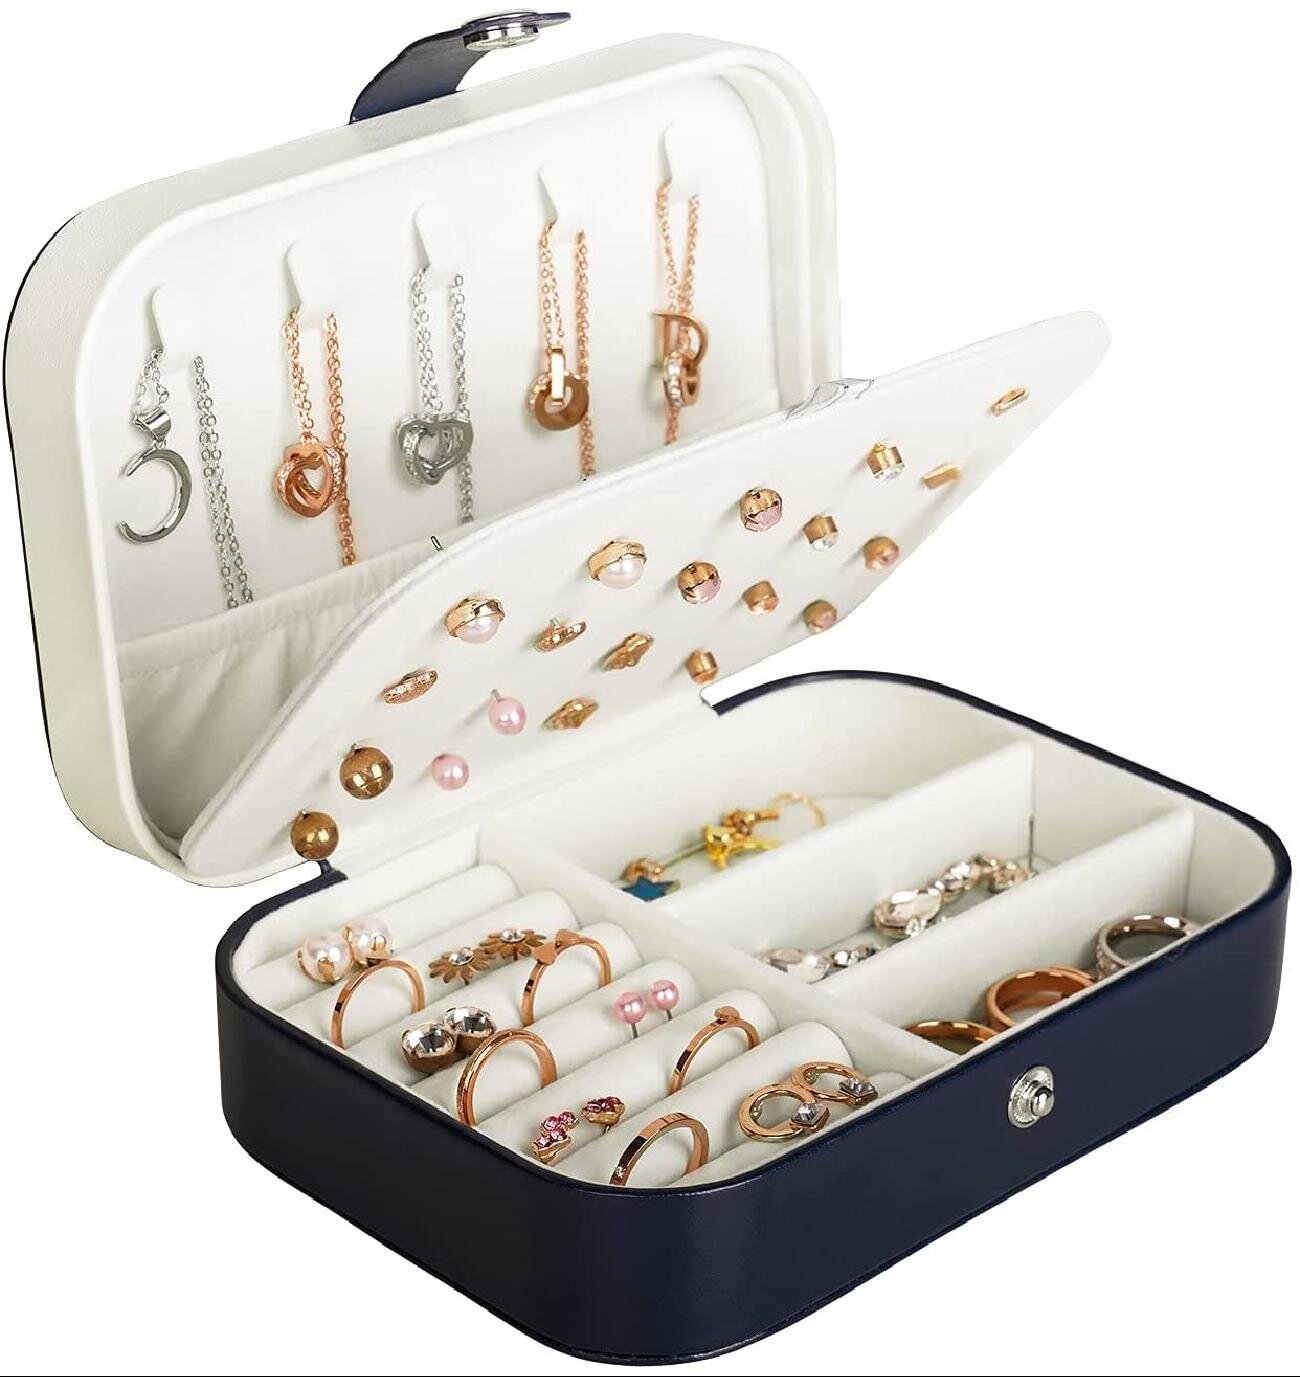 Jewelry Box Organizer Necklace Storage Case PU Leather Portable Travel Storage 